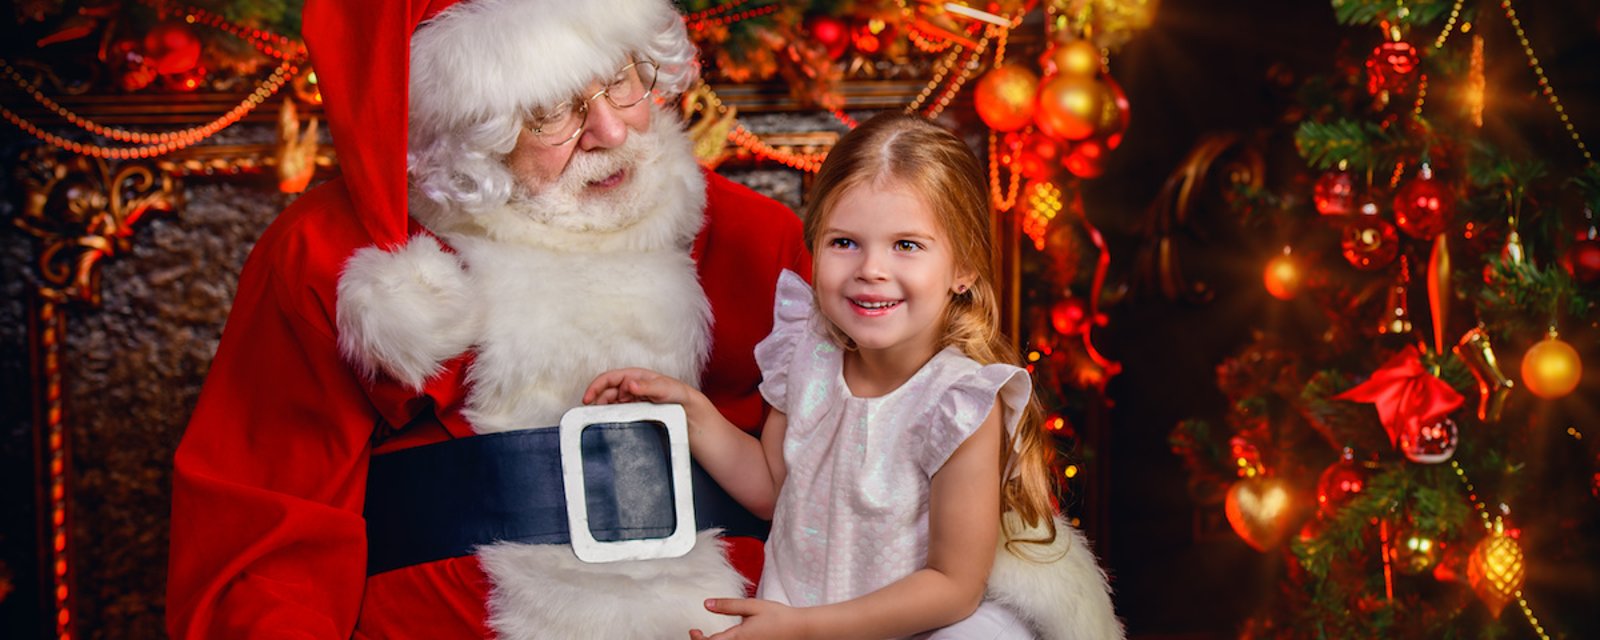 Les enfants croient au Père Noël jusqu’à l’âge de 8 ans en moyenne, selon un sondage international.